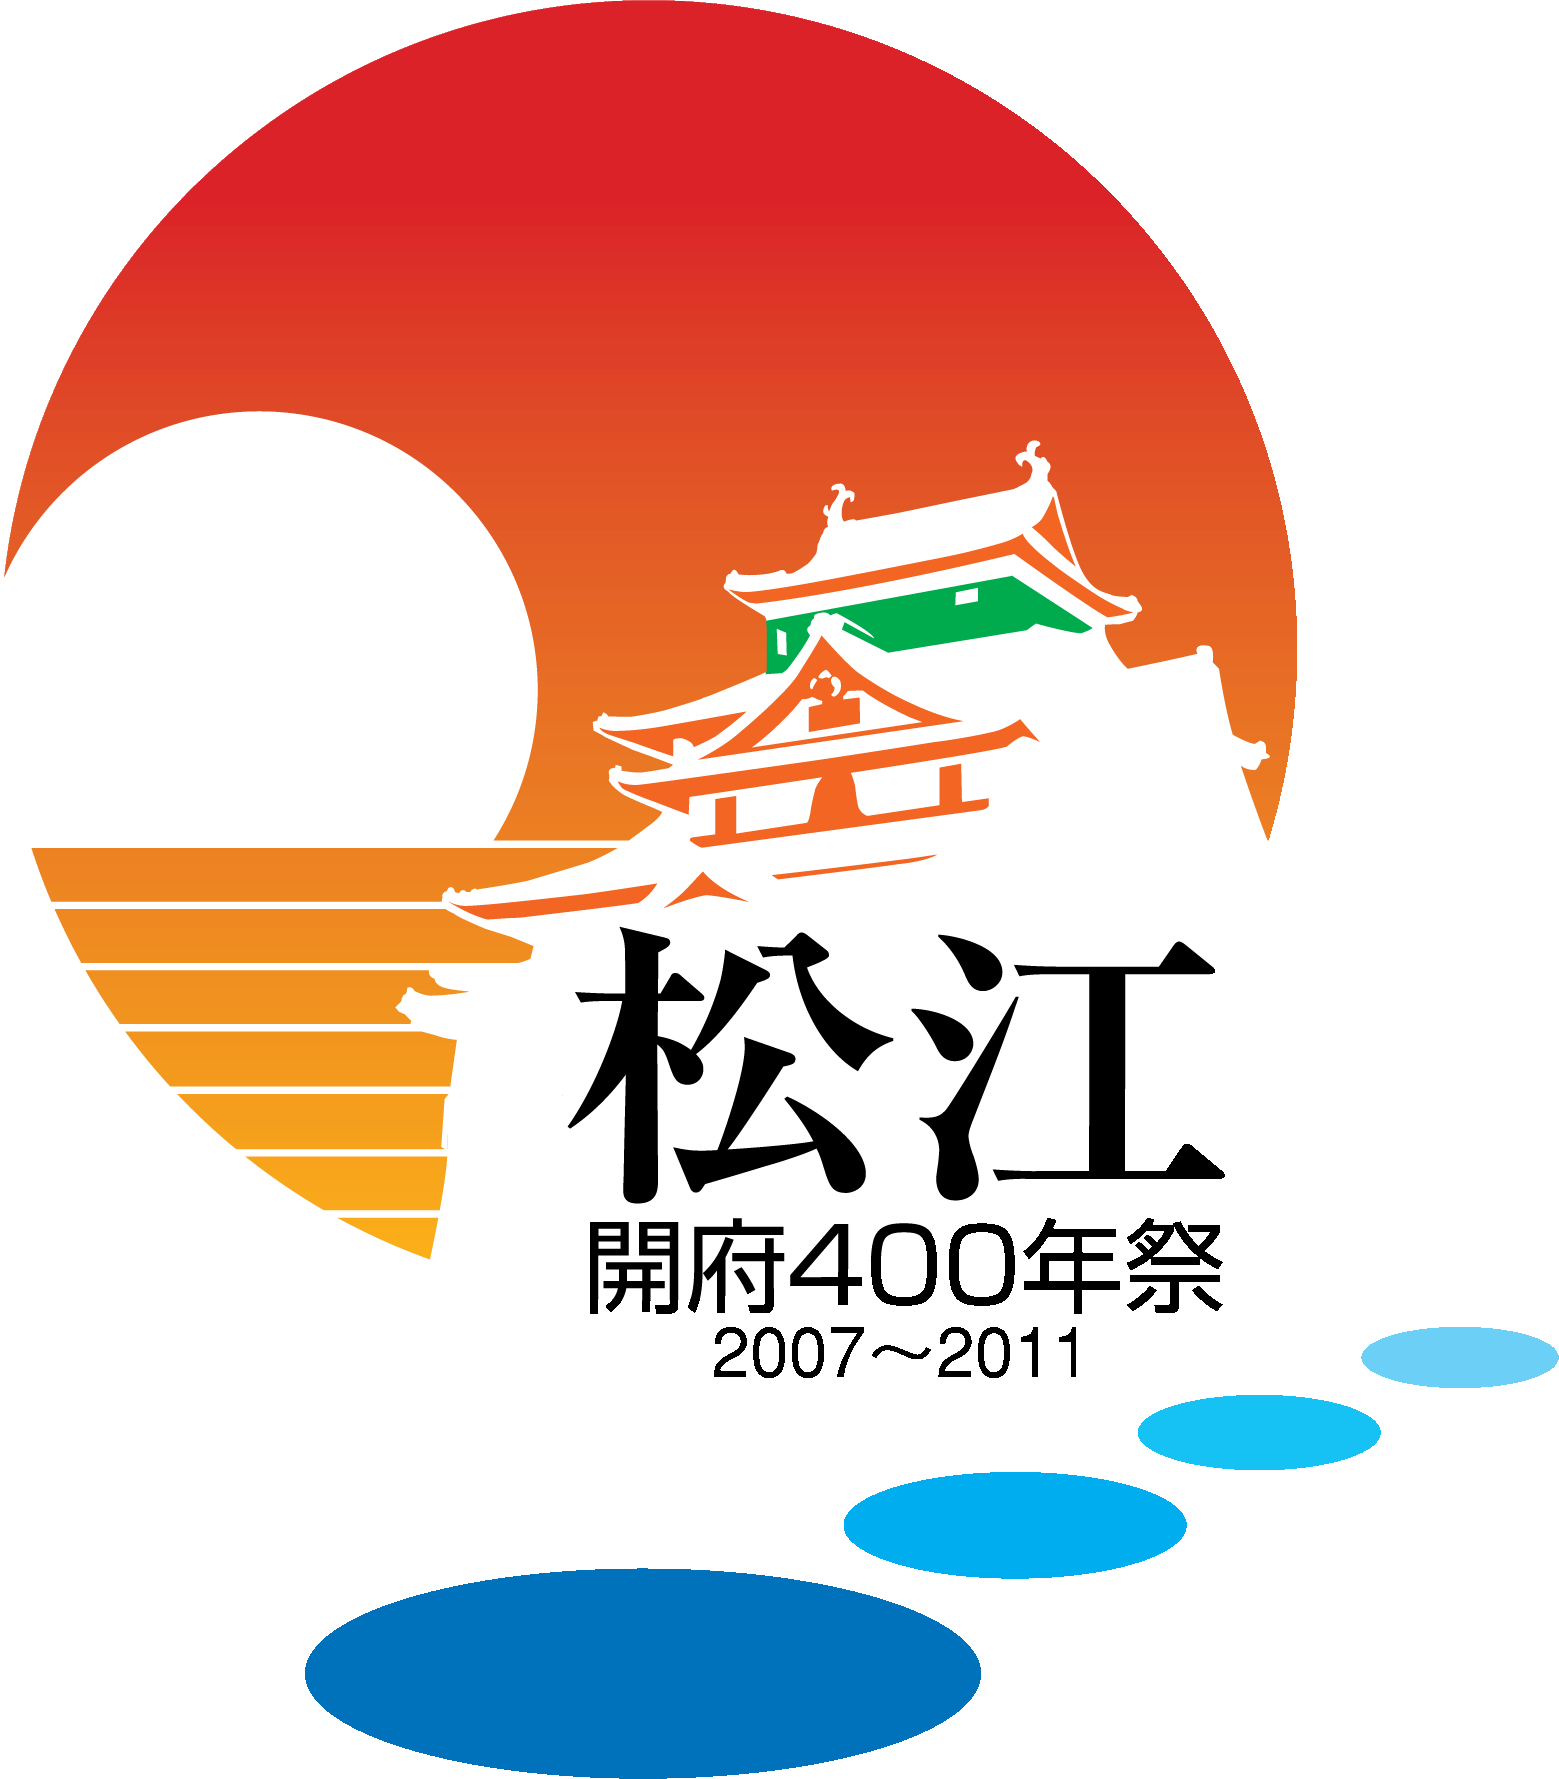 松江開府400年祭シンボルマーク（イメージ）